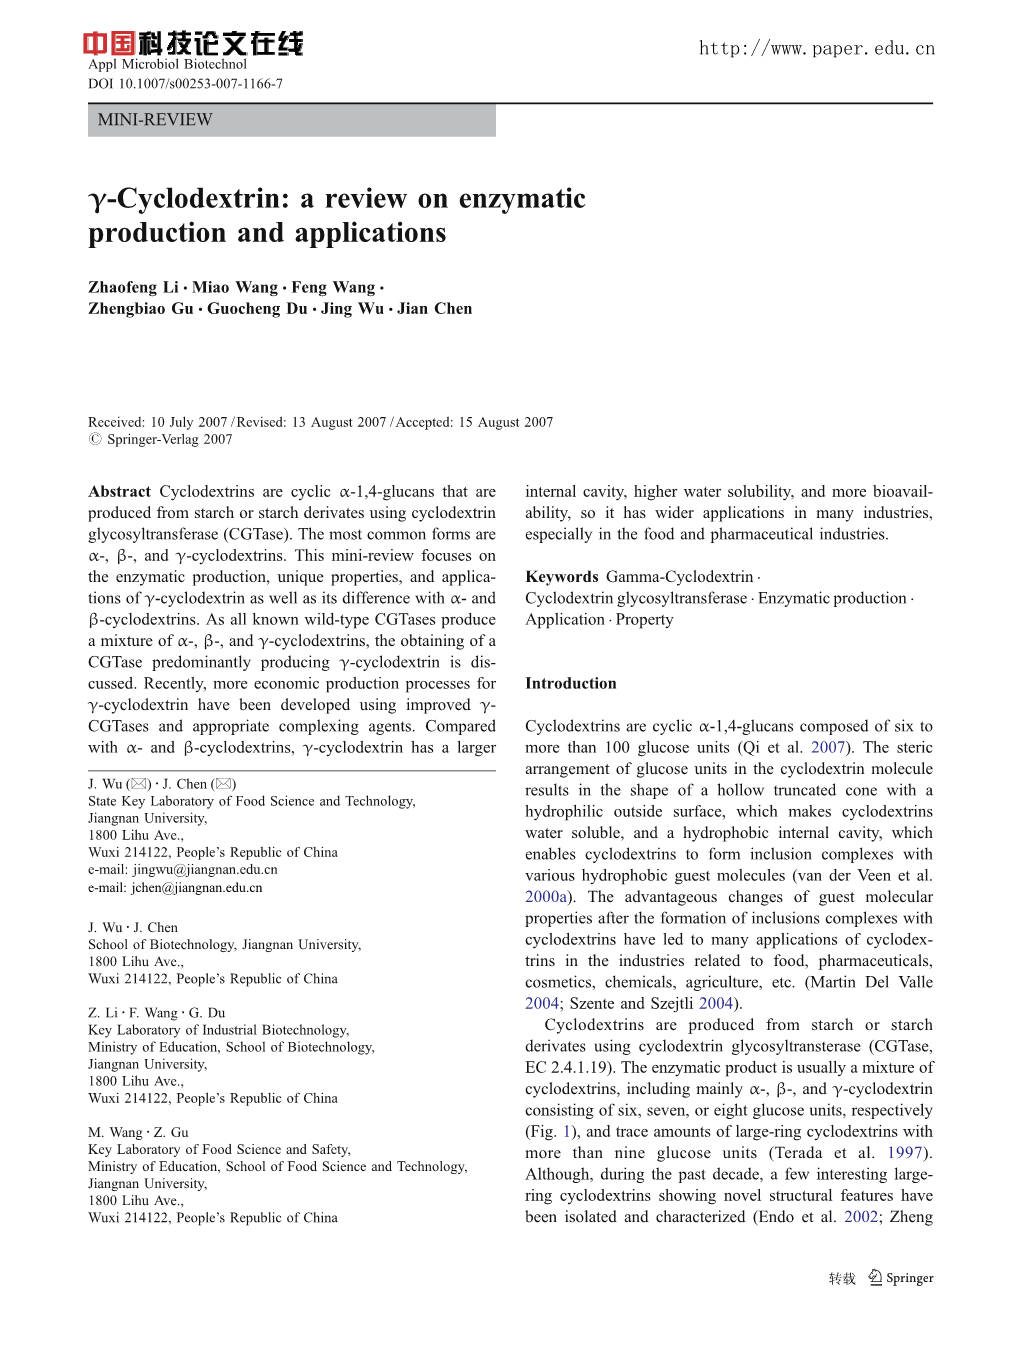 Γ-Cyclodextrin: a Review on Enzymatic Production and Applications